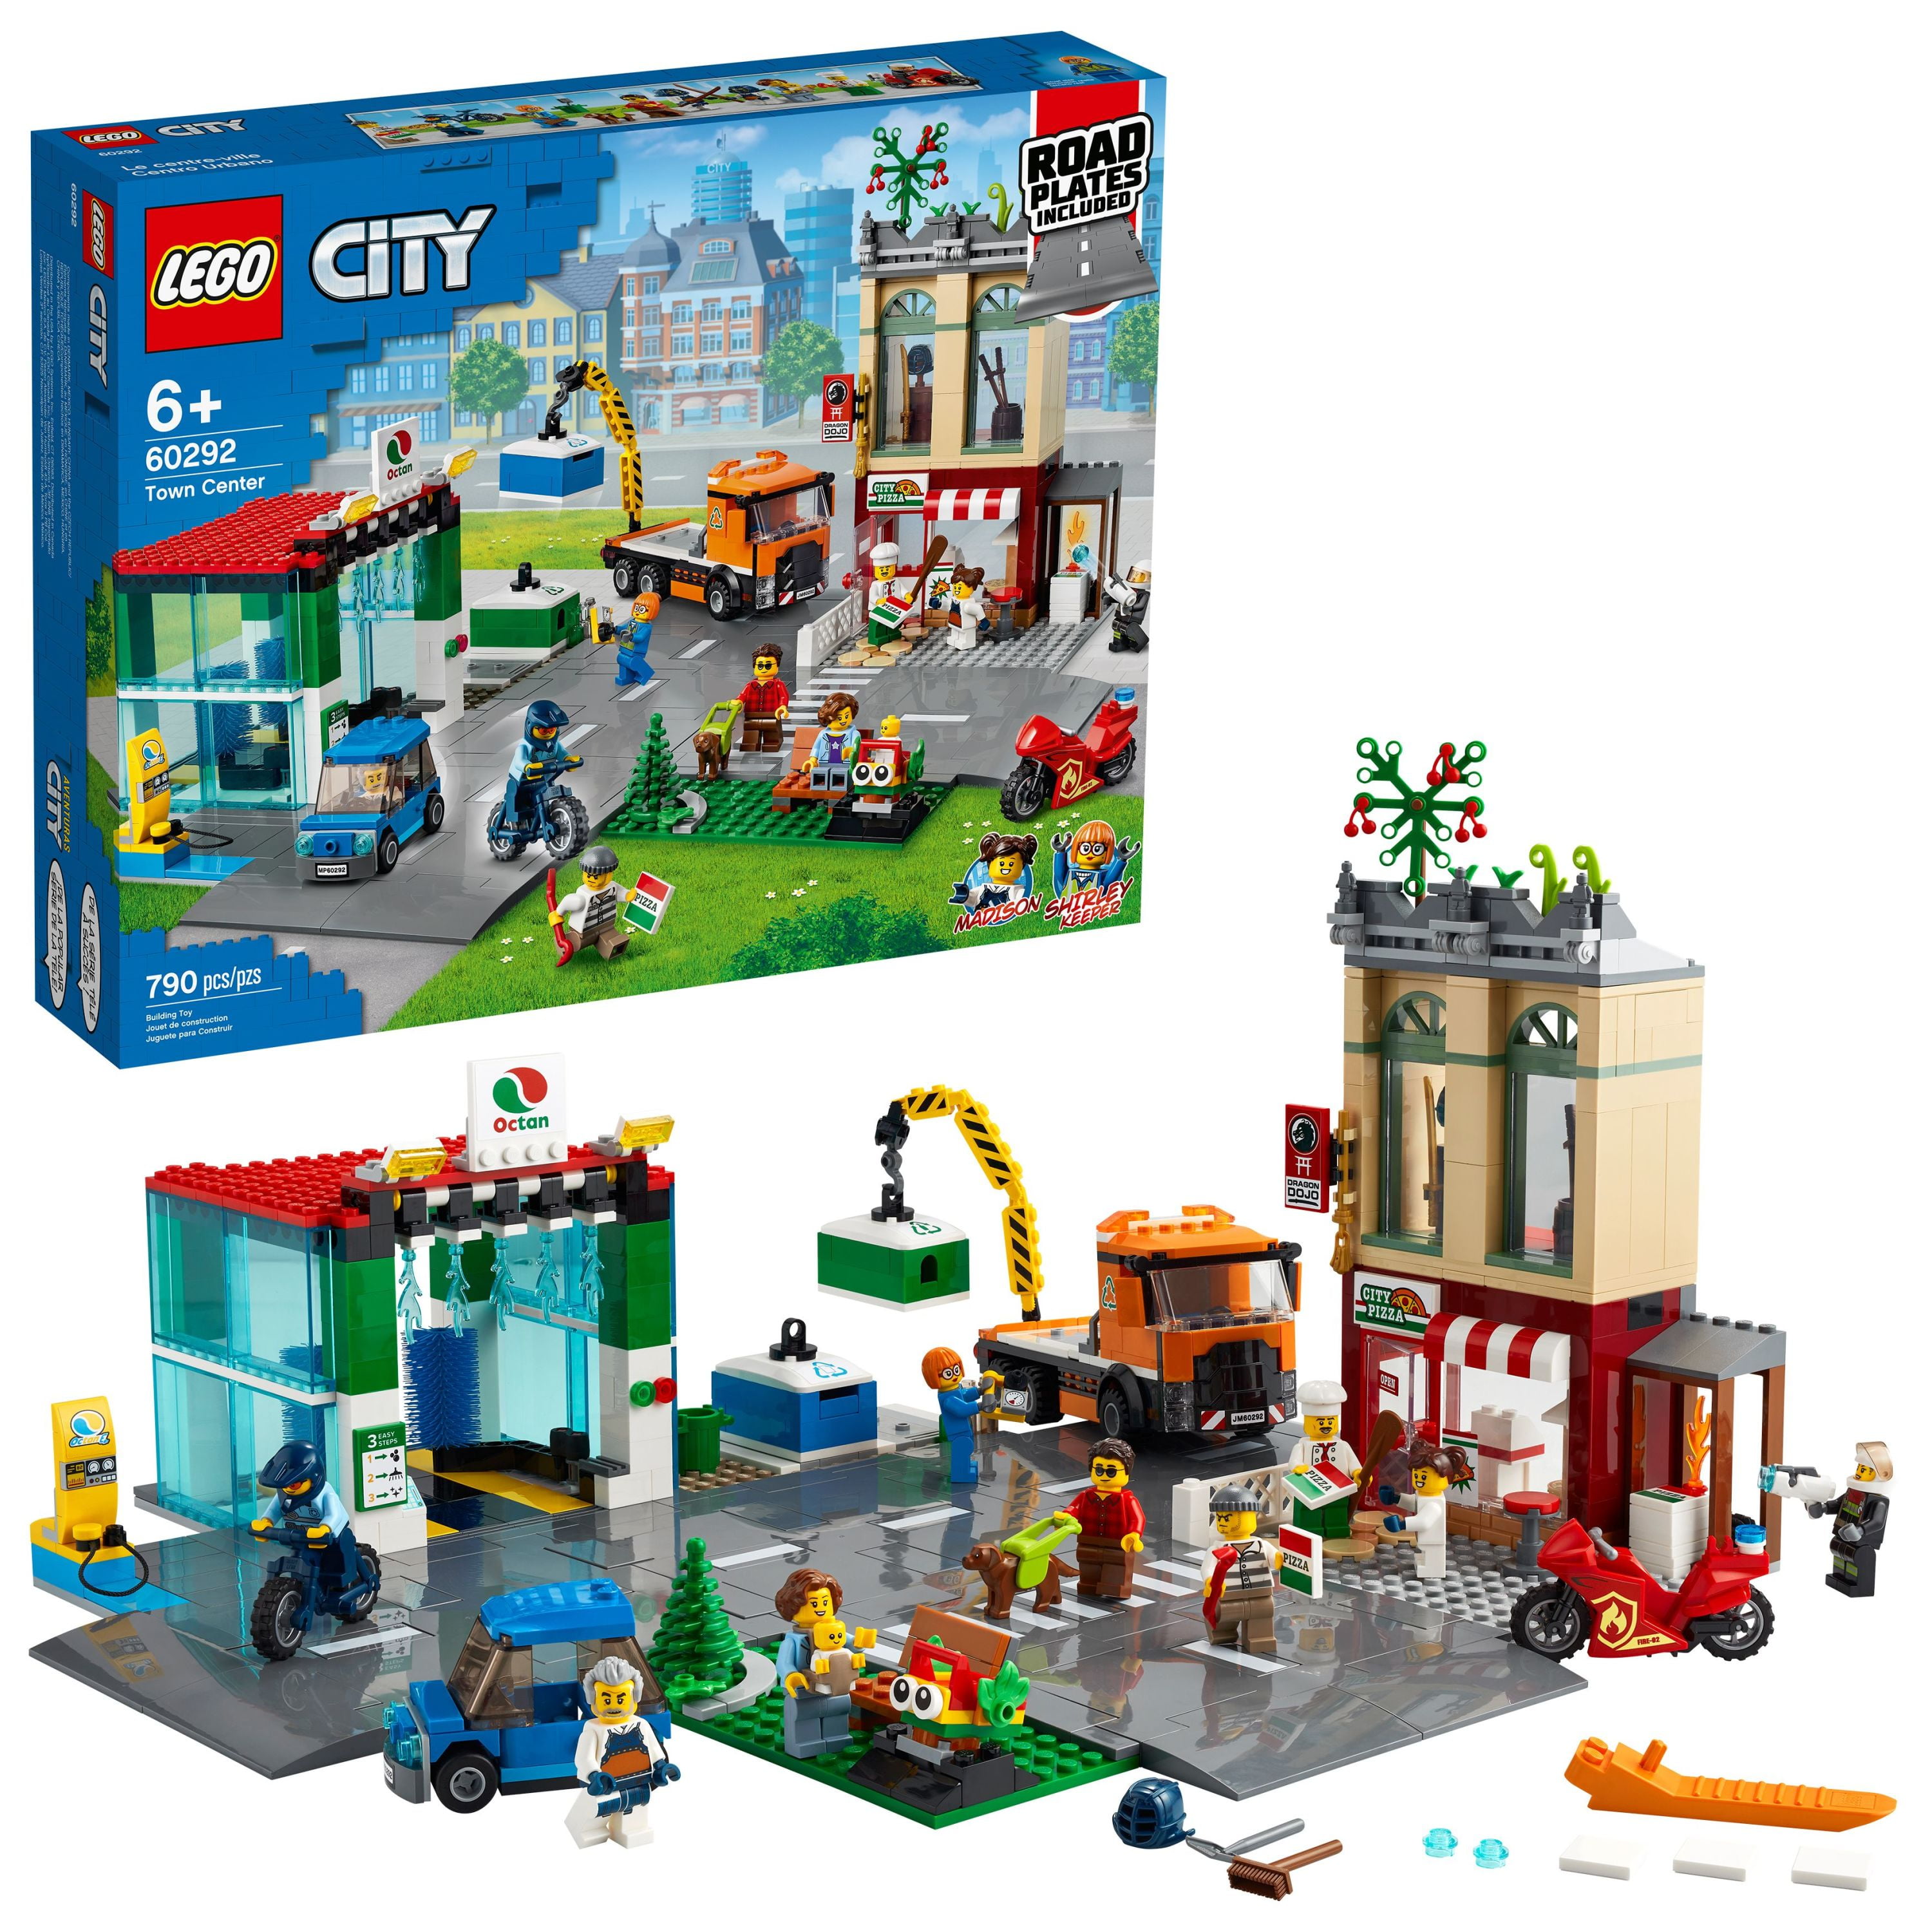 periskop Decrement vene LEGO City Town Center 60292 Cool Building Toy for Kids (790 Pieces) -  Walmart.com